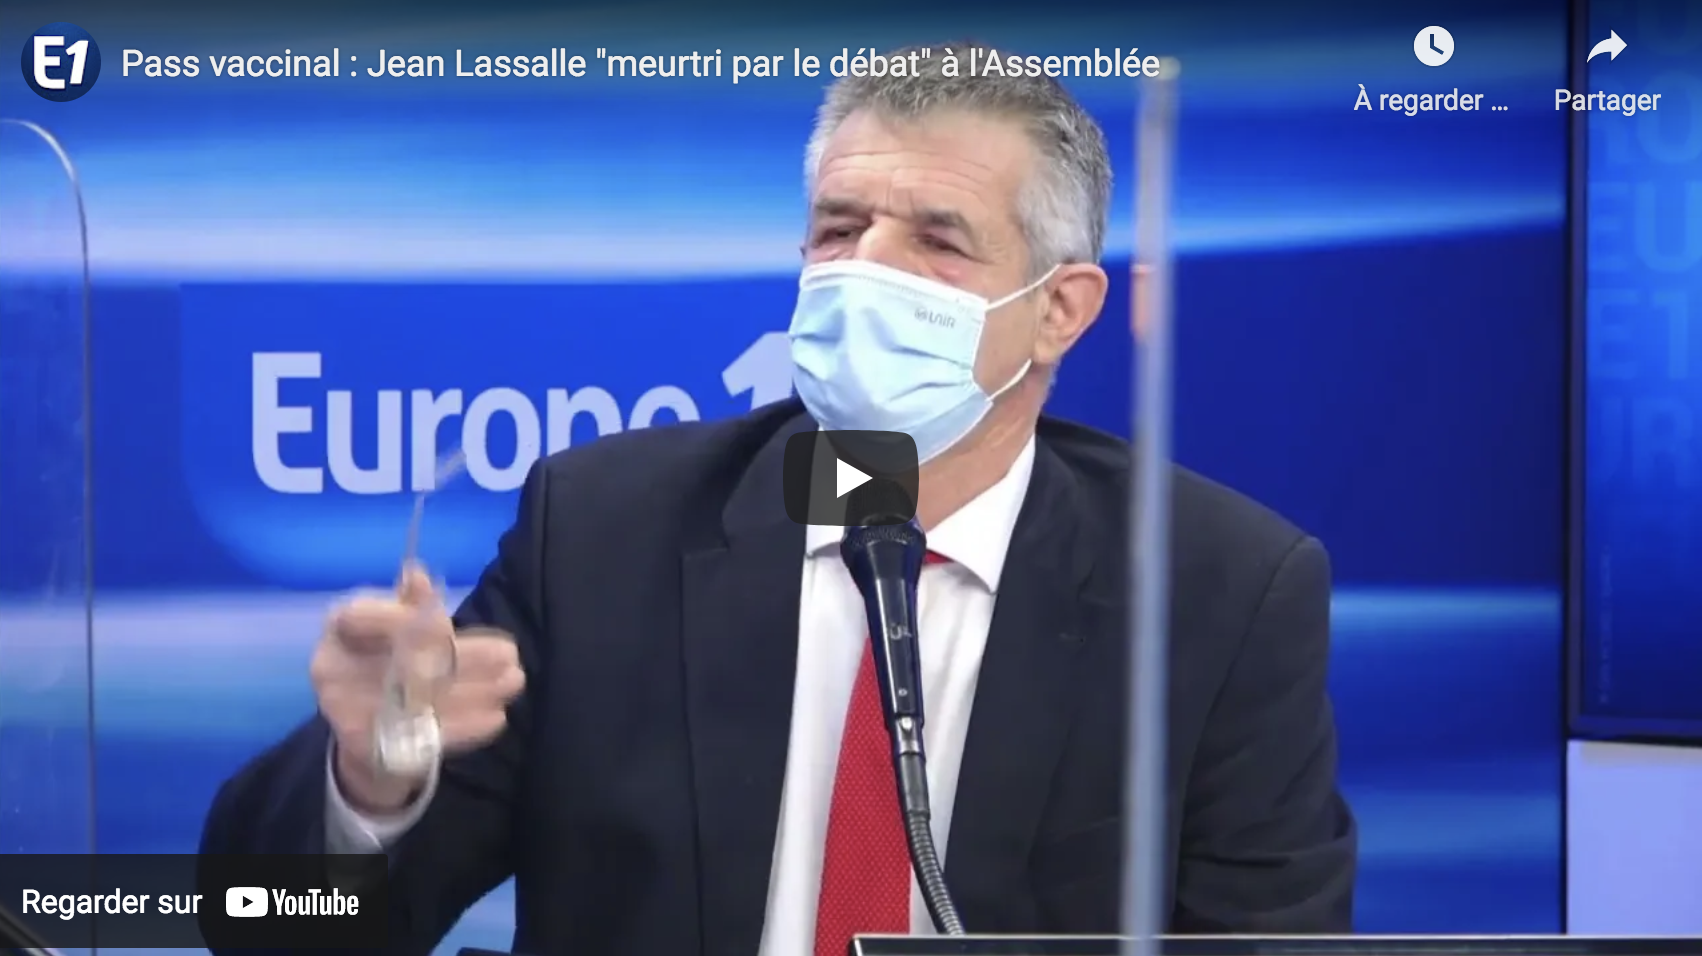 Pass vaccinal : Jean Lassalle “meurtri par le débat” à l’Assemblée (VIDÉO)